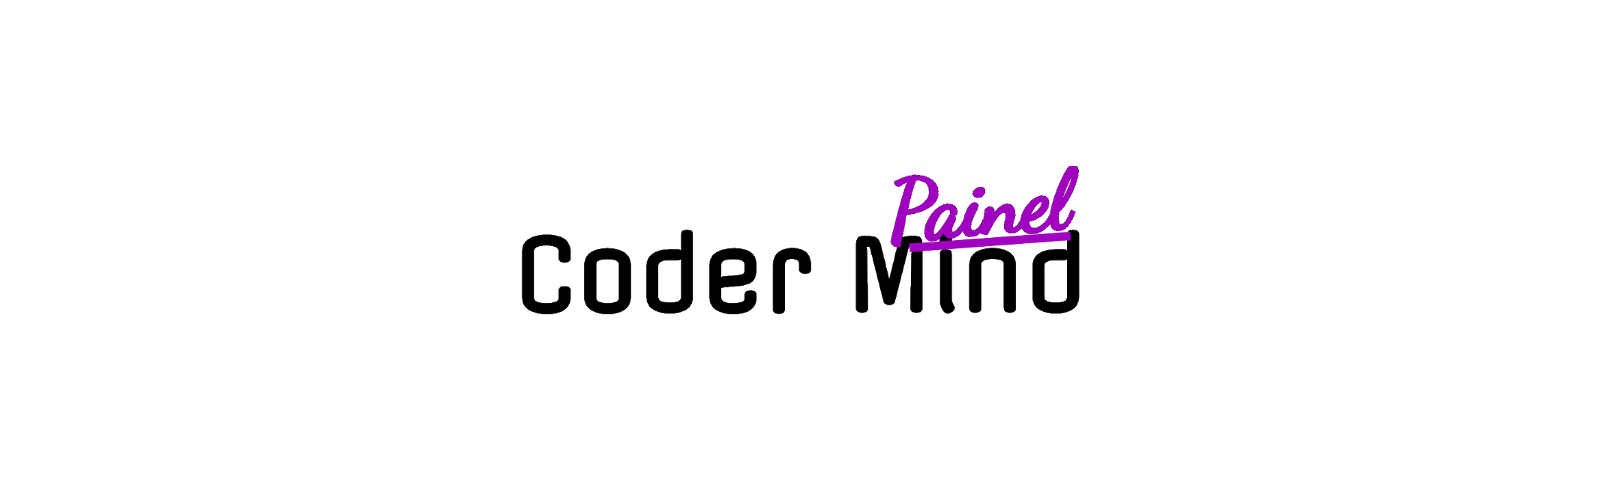 Coder Mind Panel